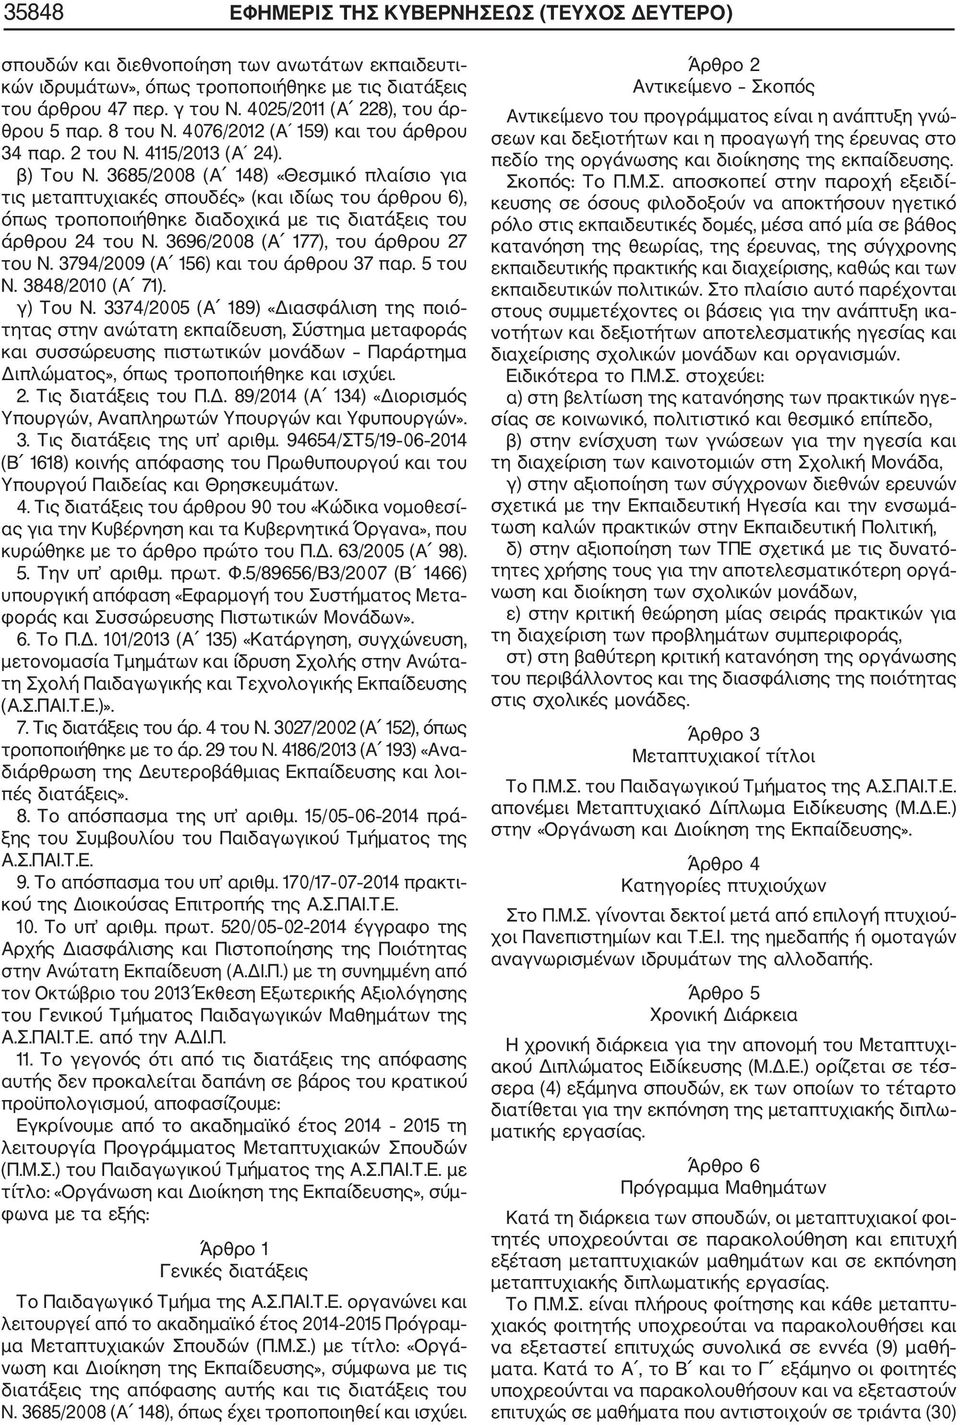 3685/2008 (Α 148) «Θεσμικό πλαίσιο για τις μεταπτυχιακές σπουδές» (και ιδίως του άρθρου 6), όπως τροποποιήθηκε διαδοχικά με τις διατάξεις του άρθρου 24 του Ν. 3696/2008 (Α 177), του άρθρου 27 του Ν.